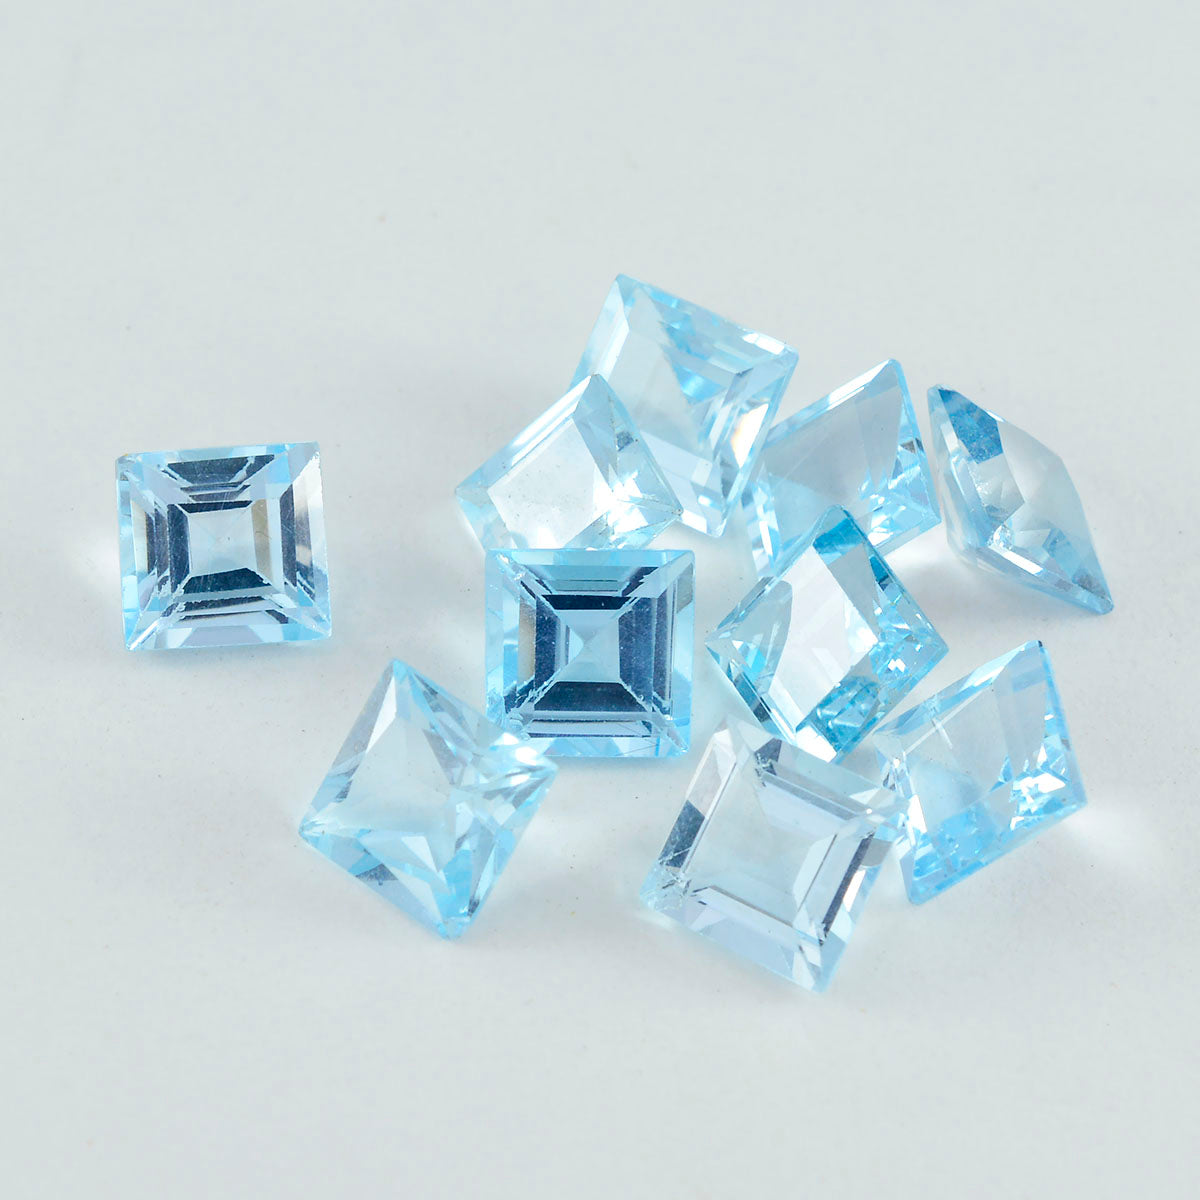 riyogems 1 шт. настоящий синий топаз ограненный 6x6 мм квадратной формы, камень хорошего качества